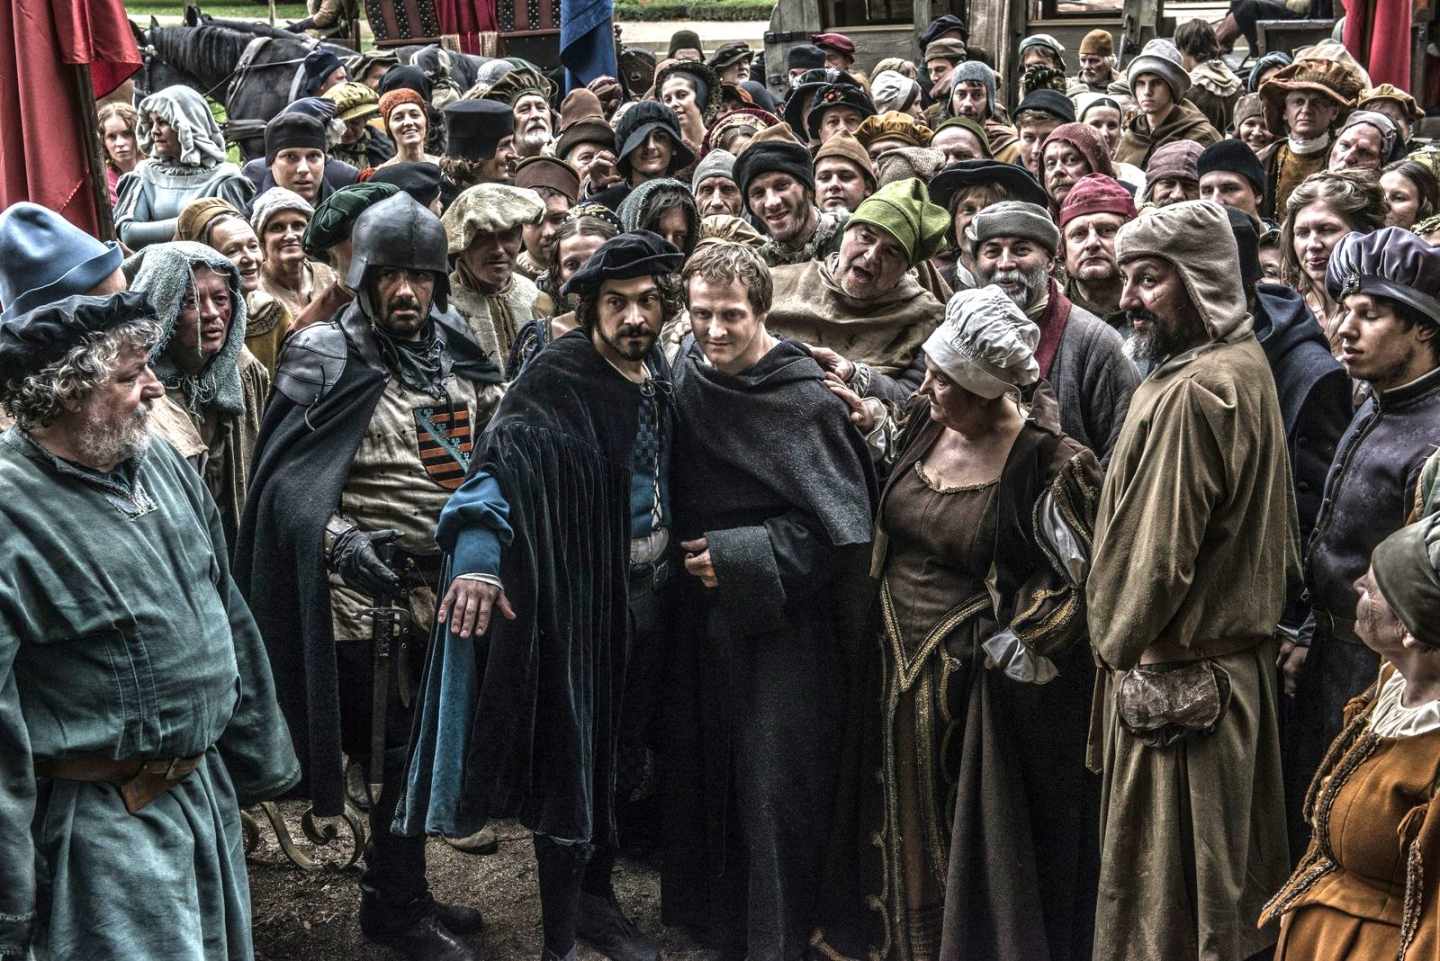 Fotograma de la serie "Lutero: la reforma" en la que se ve al protagonista rodeado de mucha gente